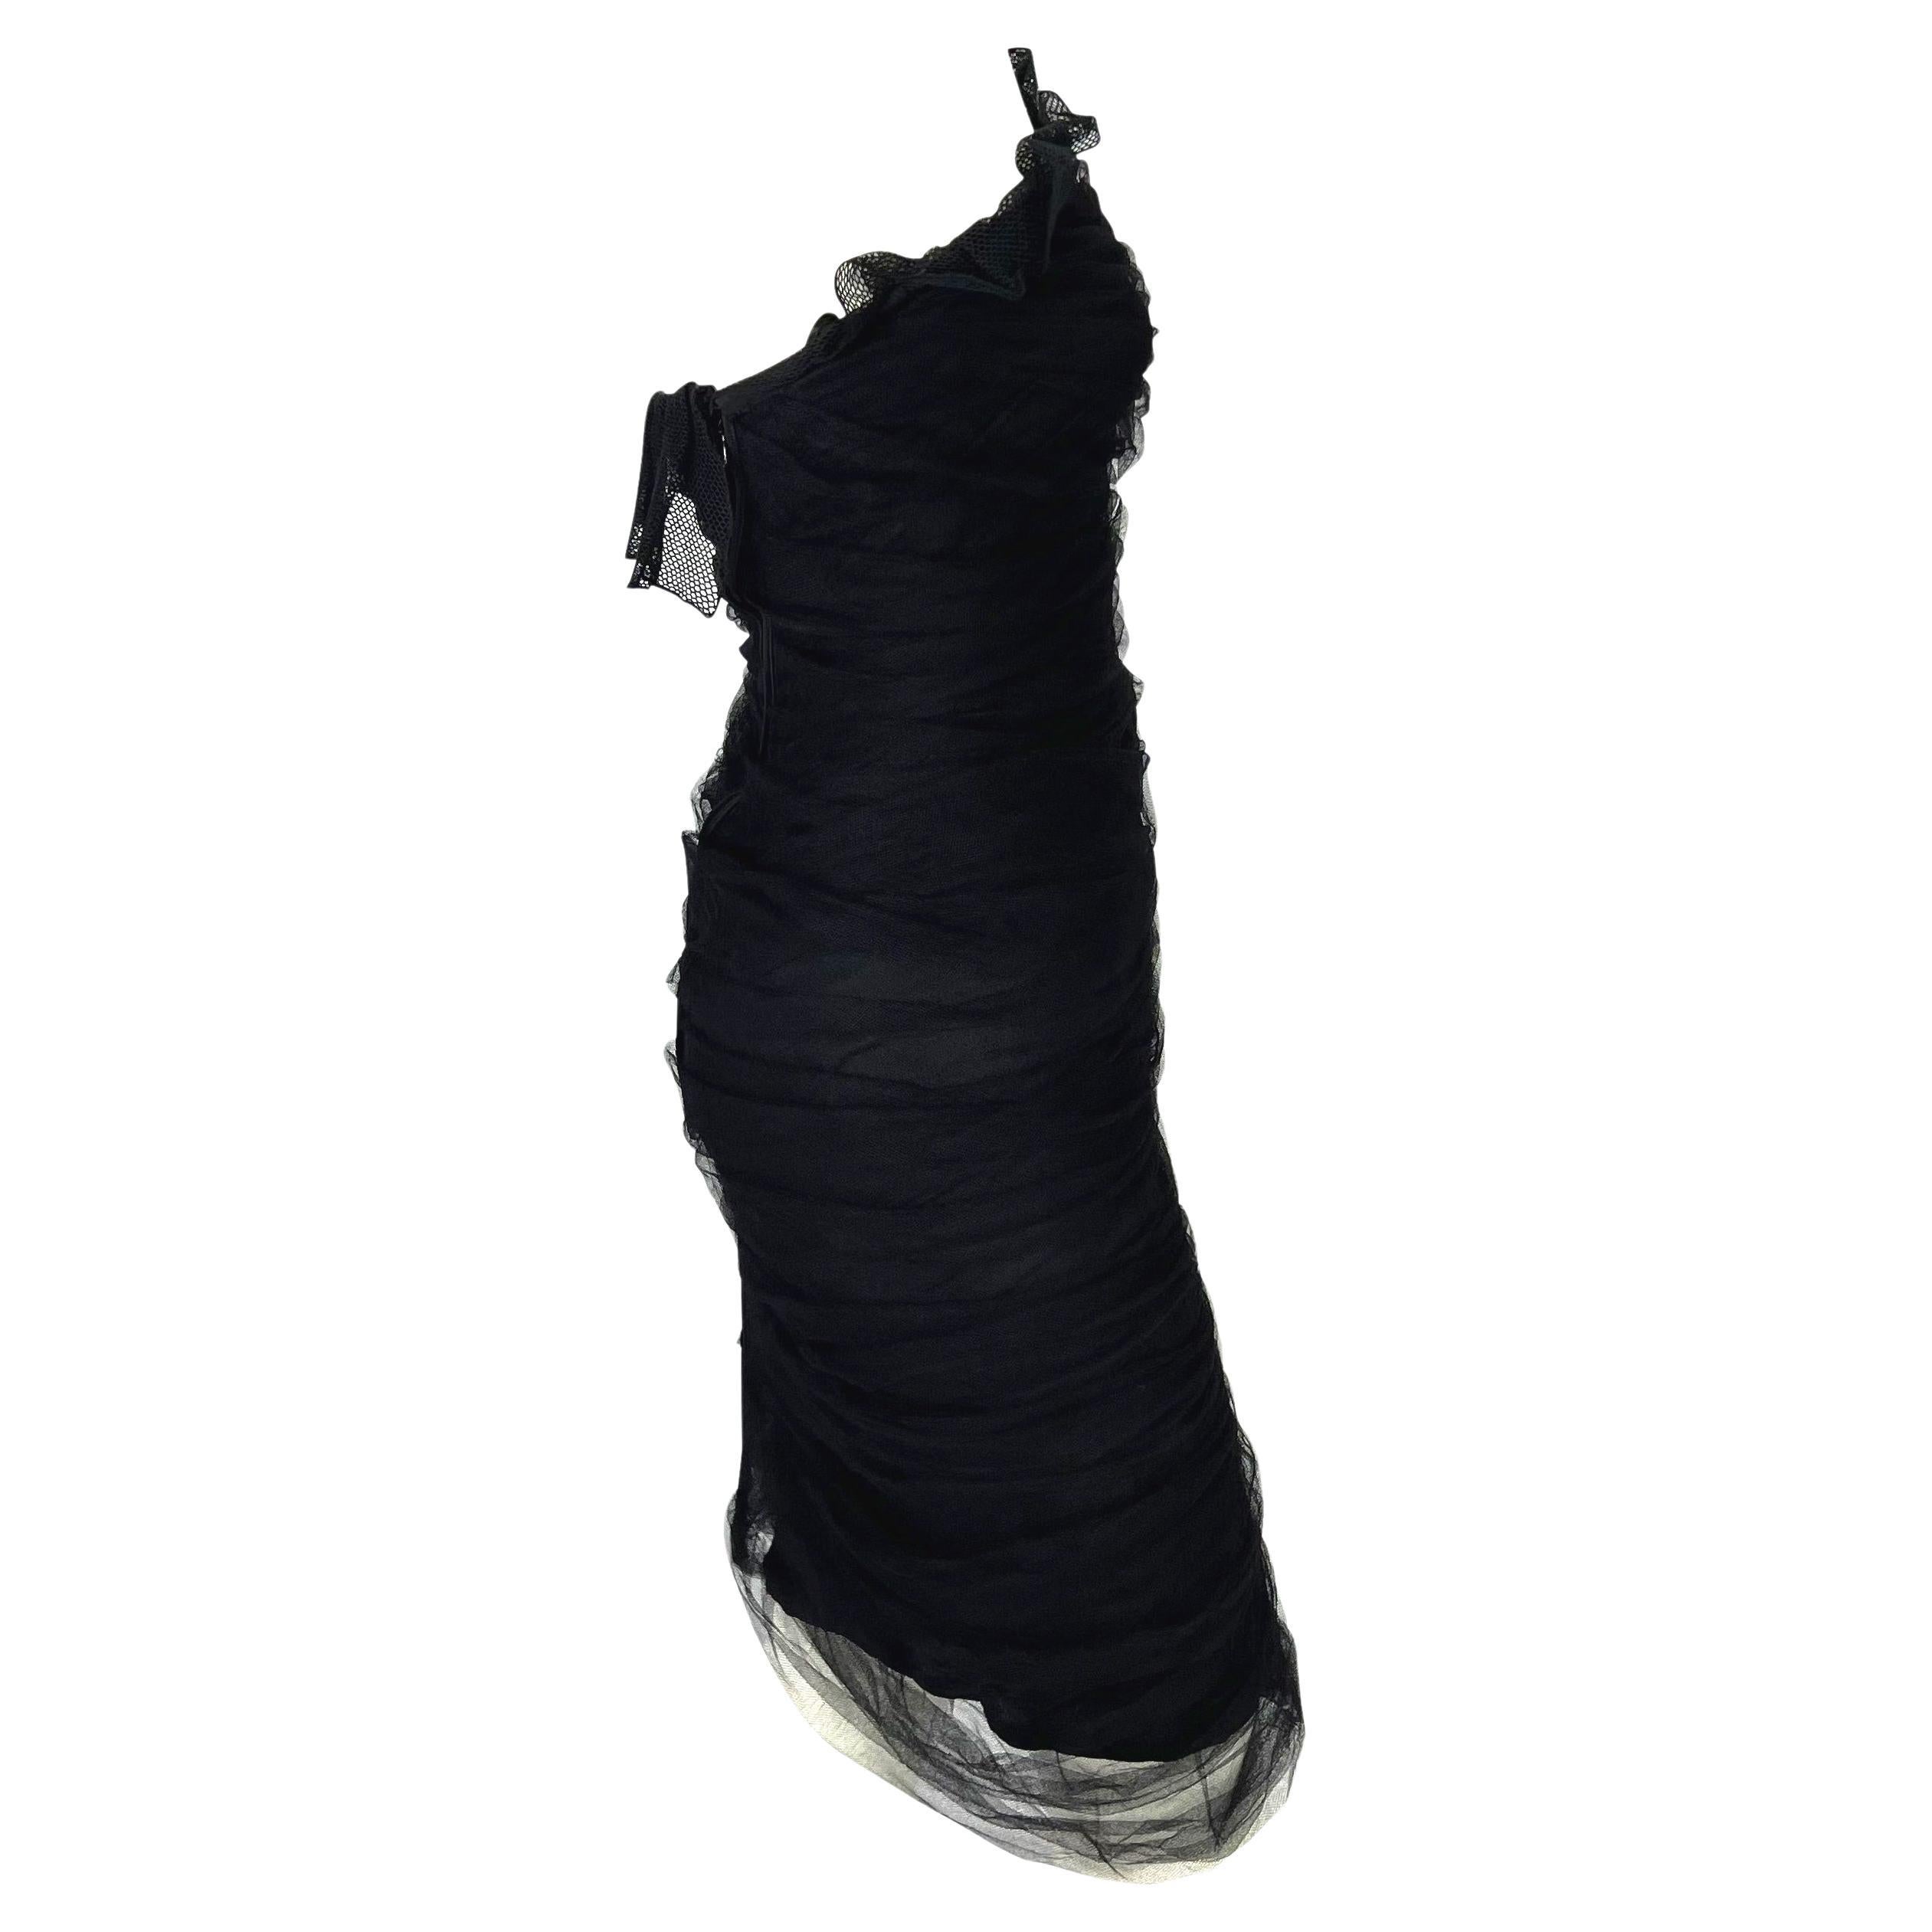 Black S/S 2001 Yves Saint Laurent by Tom Ford Tulle Overlay Mesh Strapless Dress For Sale